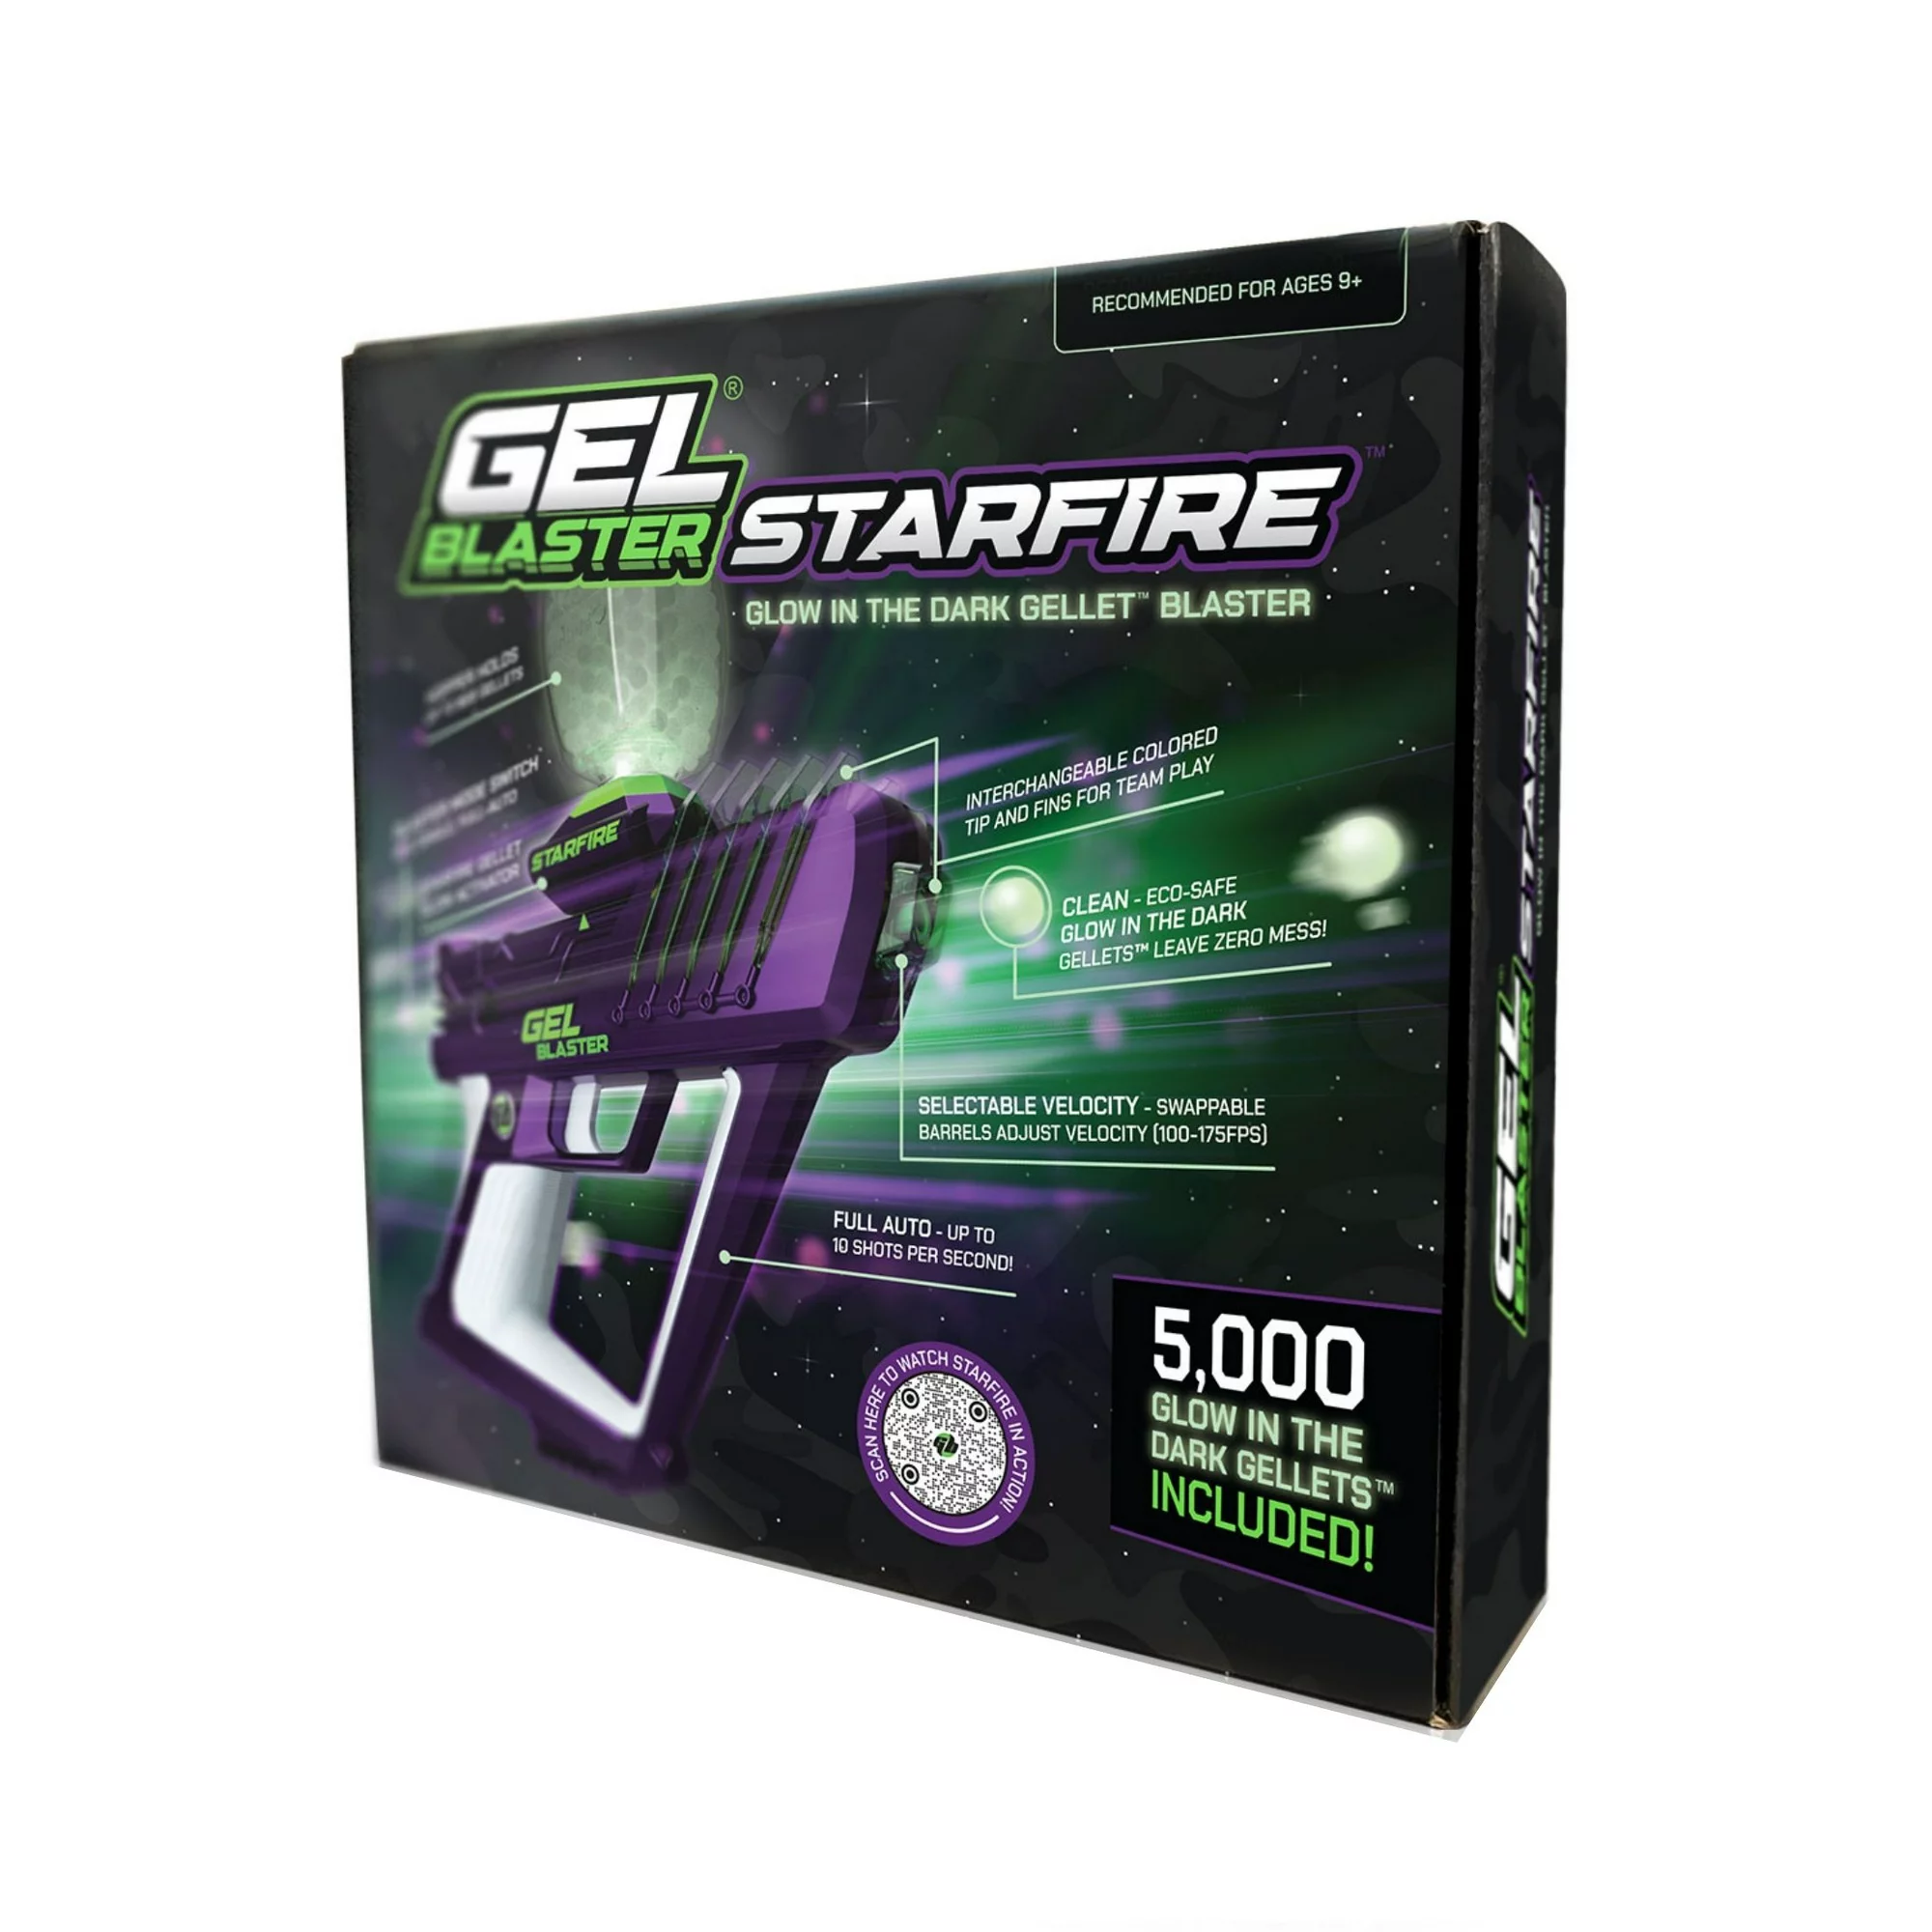 5000 Gel blaster starfire Glow-In-The-Dark Gellets system